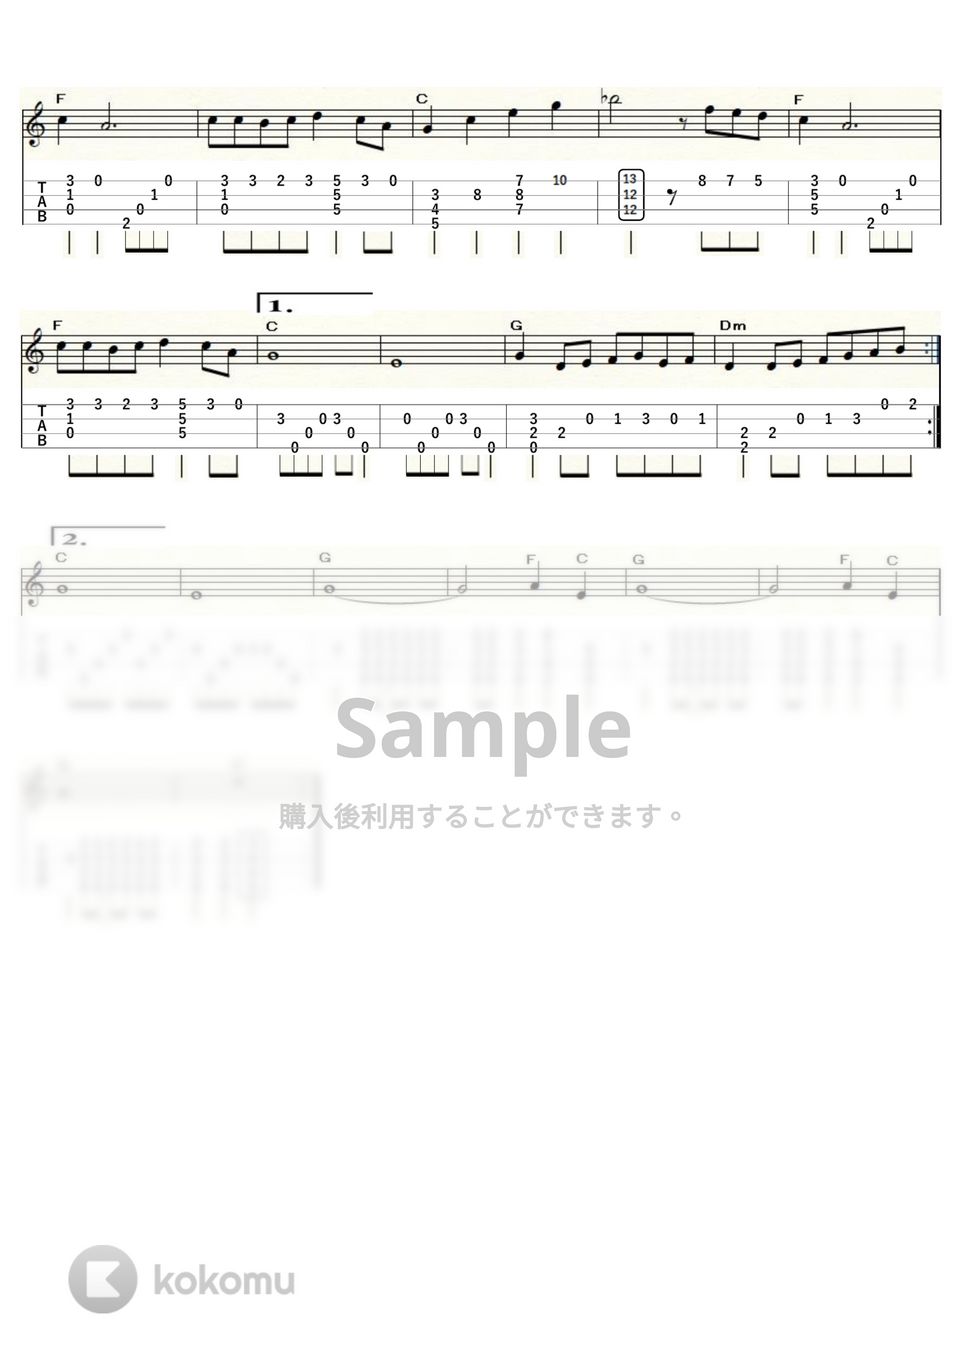 ビージーズ - メロディ・フェア～映画『小さな恋のメロディー』主題歌～ (ｳｸﾚﾚｿﾛ / Low-G / 中級) by ukulelepapa